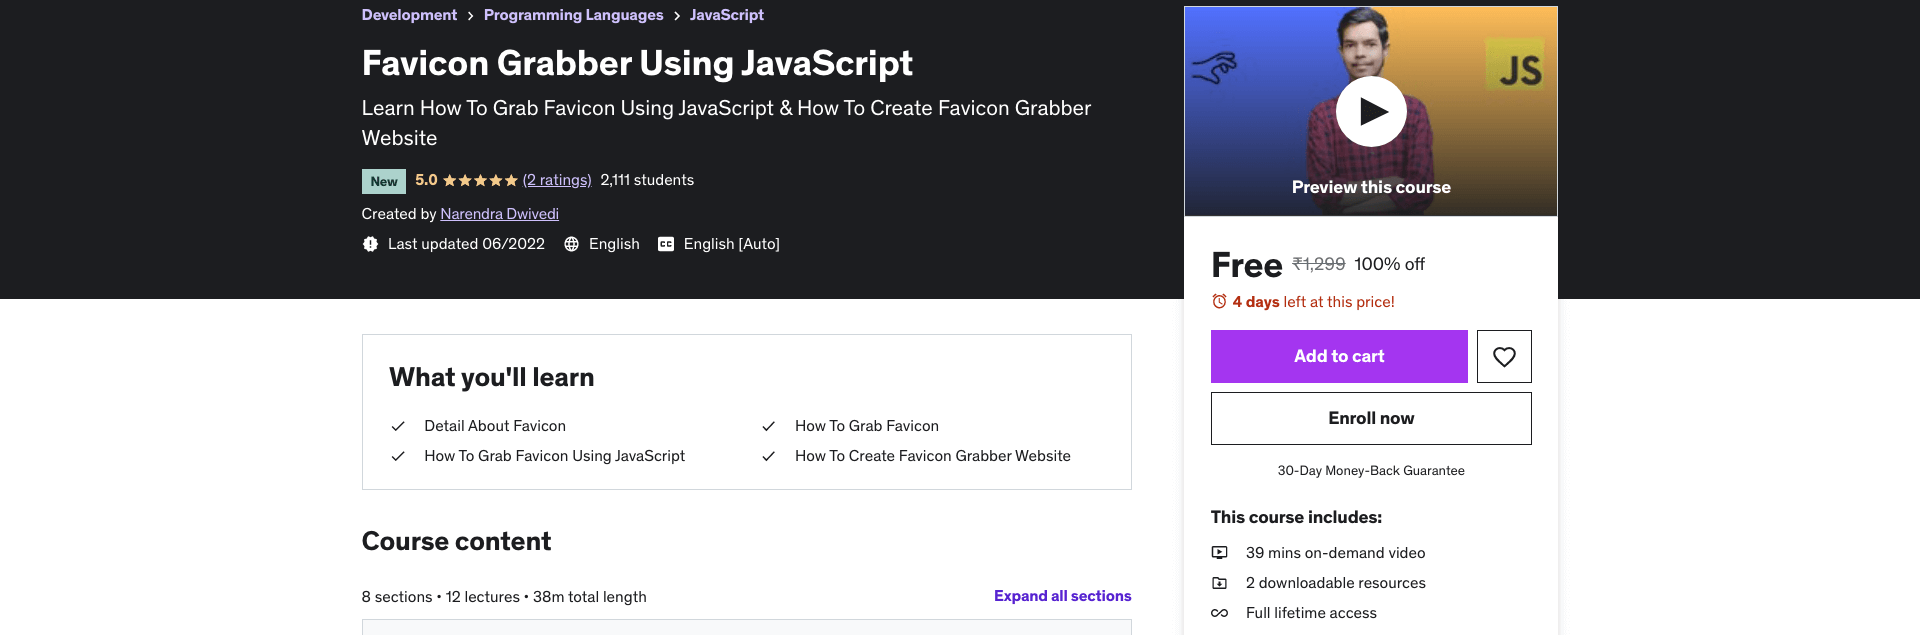 Favicon Grabber Using JavaScript